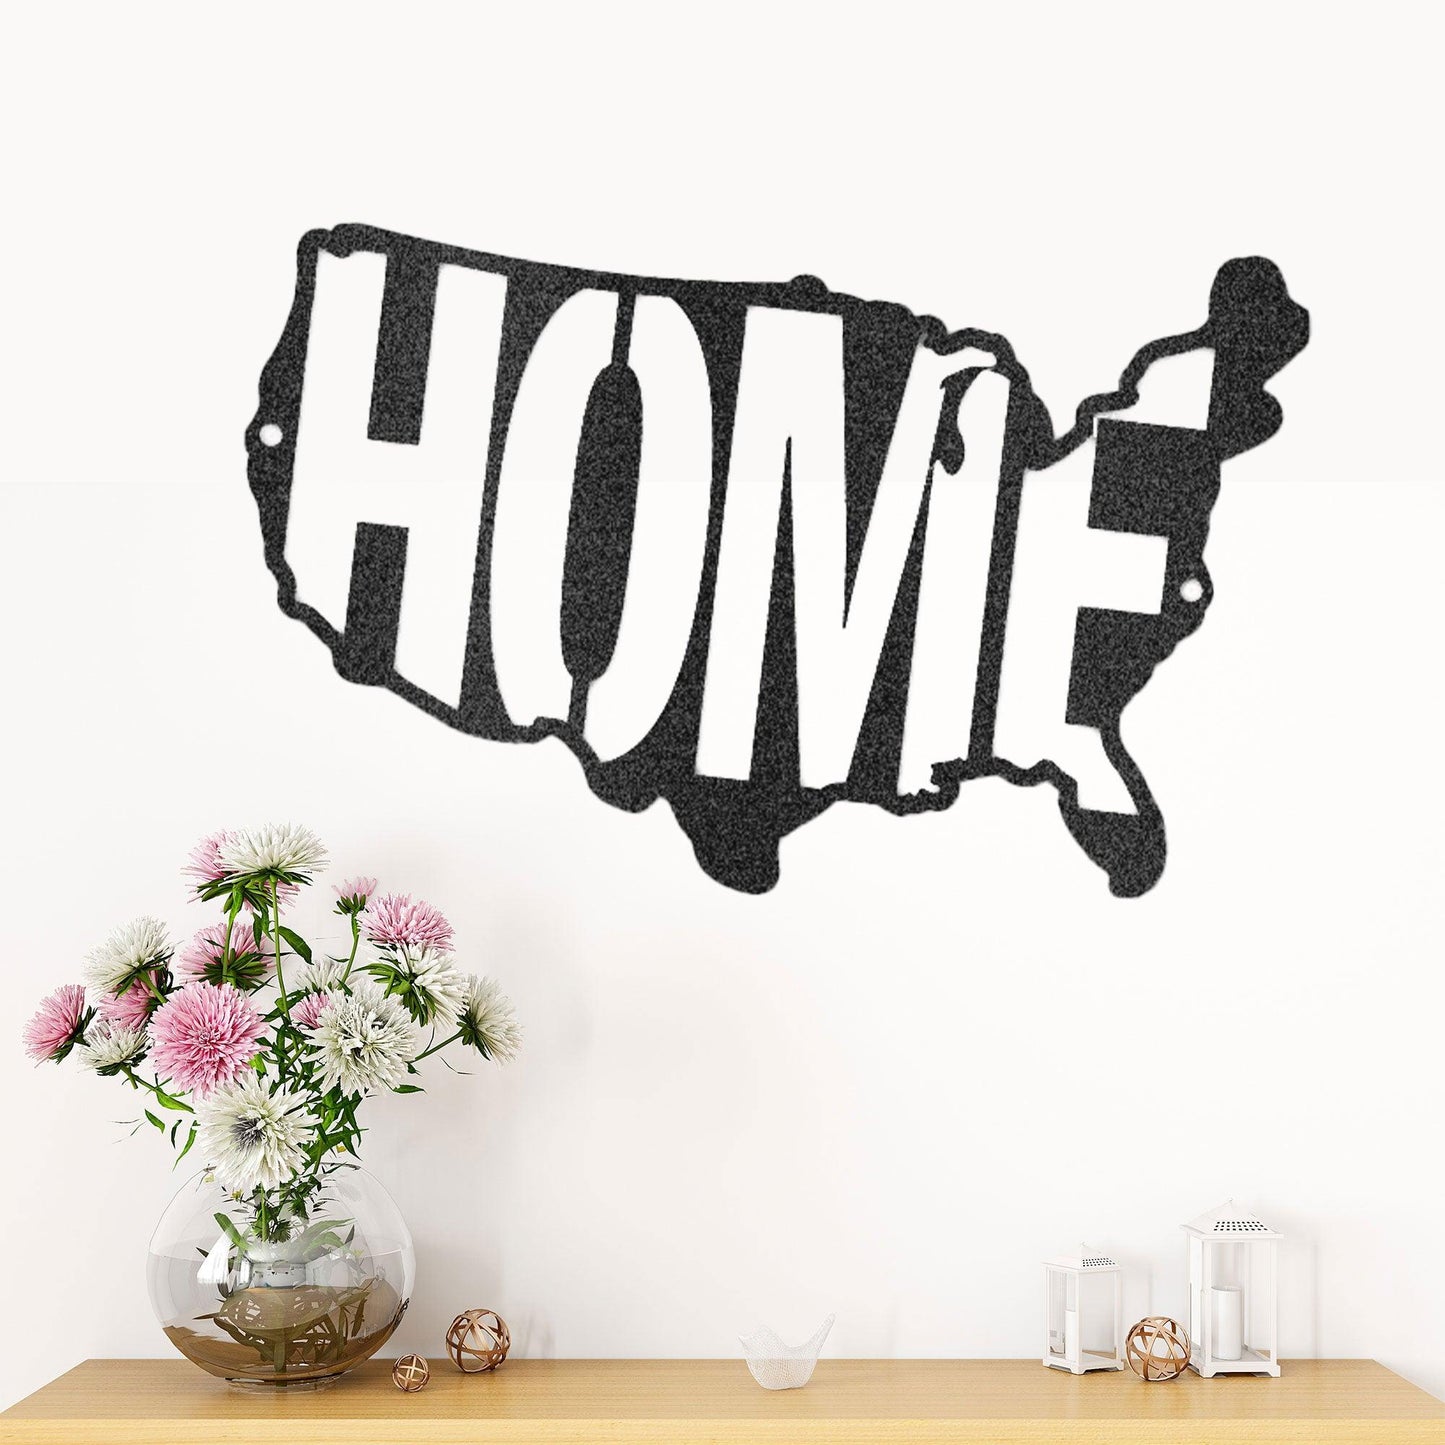 USA Home Indoor Outdoor Steel Wall Sign - Mallard Moon Gift Shop